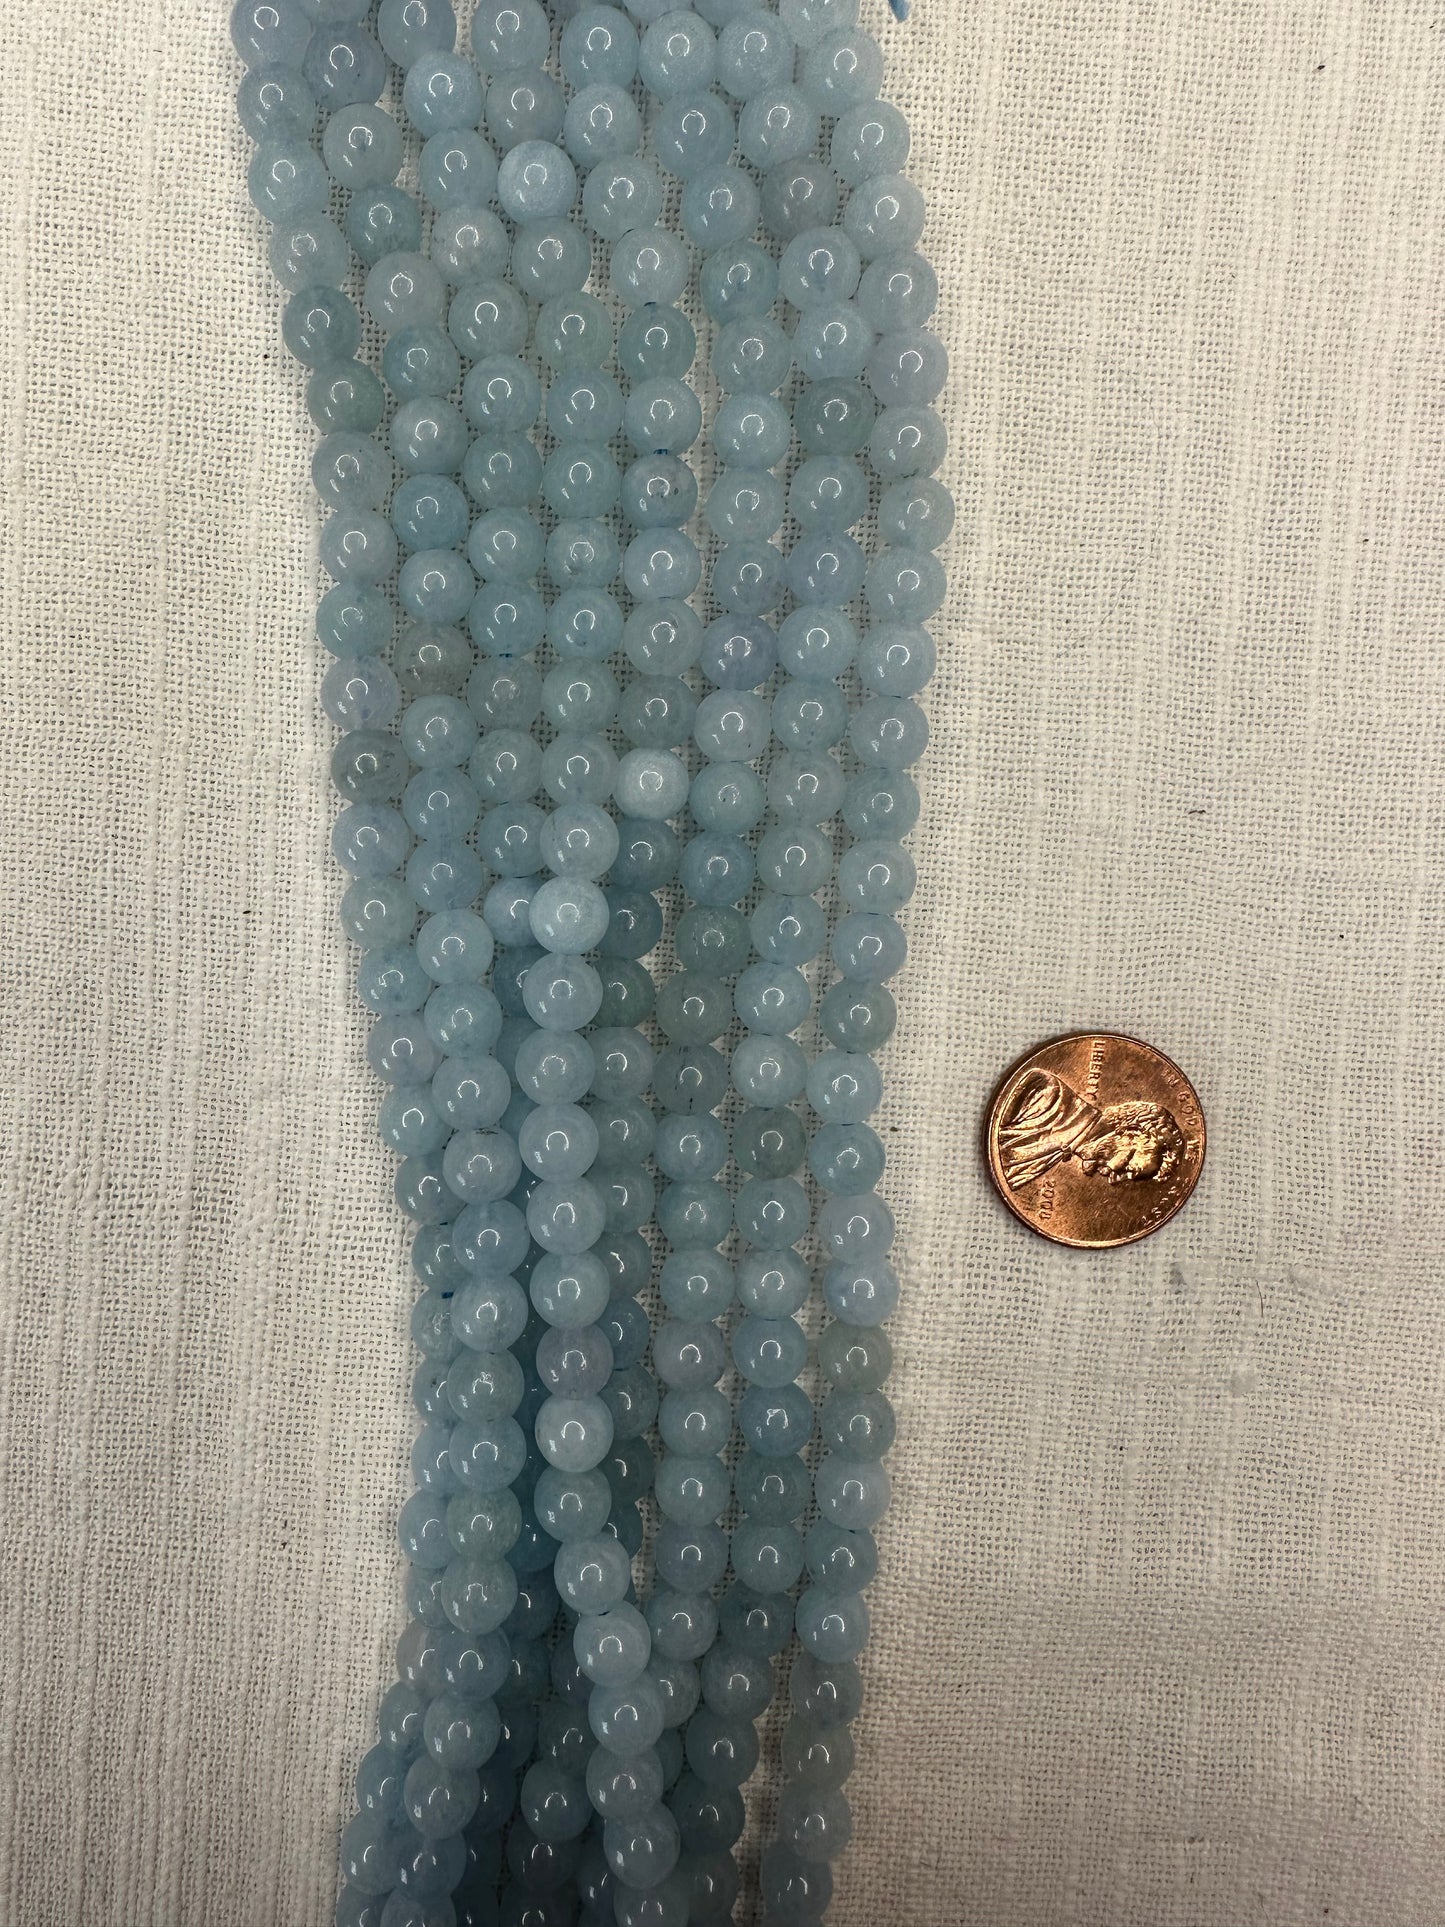 aquamarine 6mm round beads AAA grade  16"strand